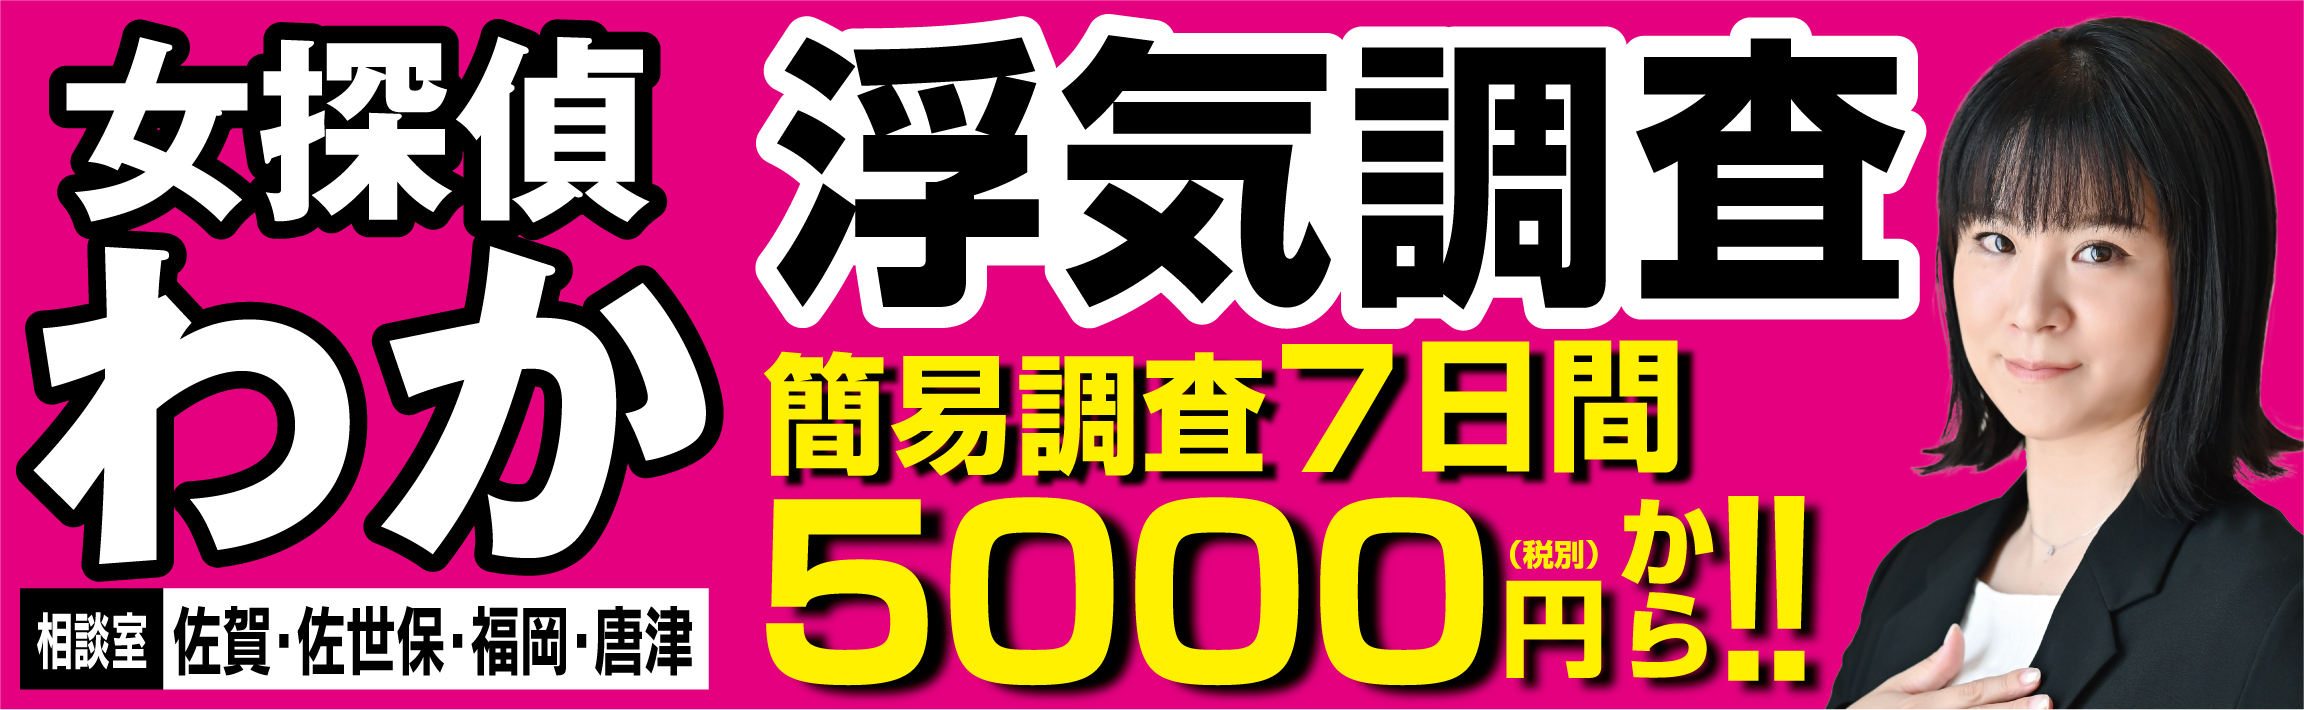 簡易浮気調査 7日間 5000円!